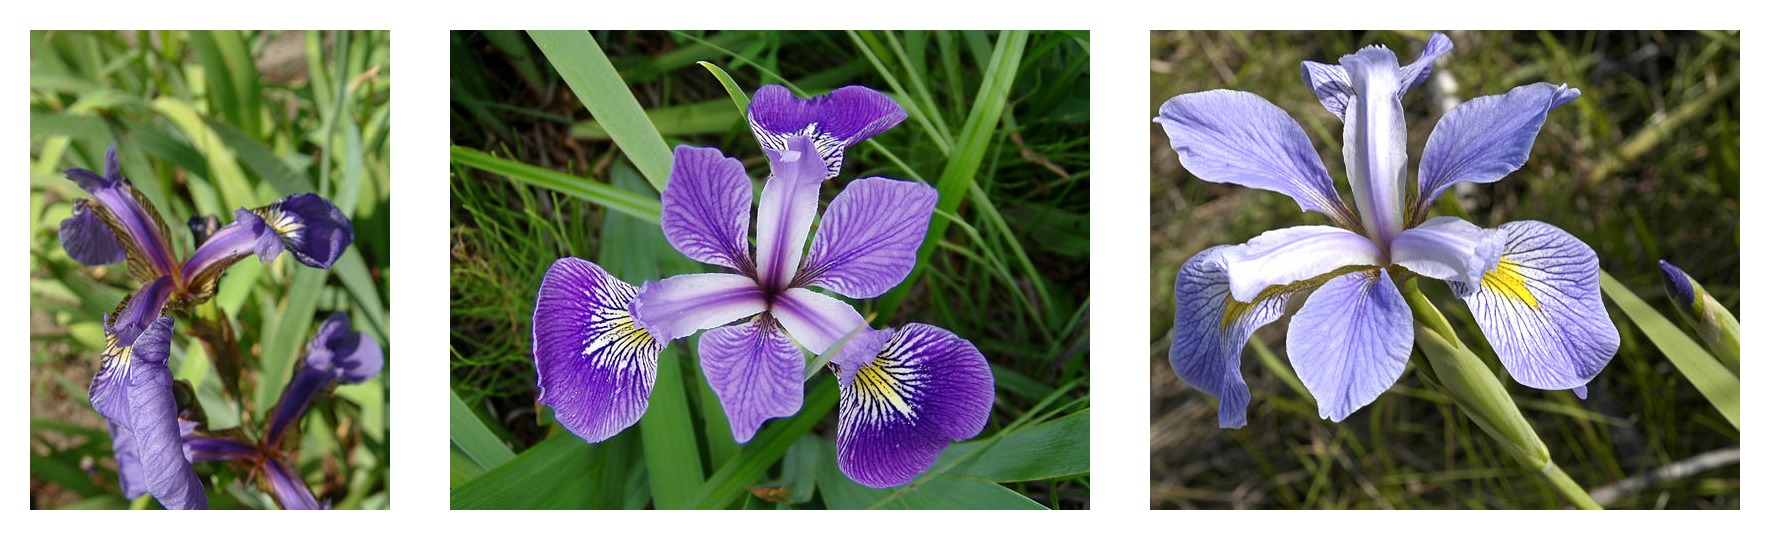 三个 Iris 花种的花瓣几何形状的对比： Iris setosa, Iris virginica, and Iris versicolor